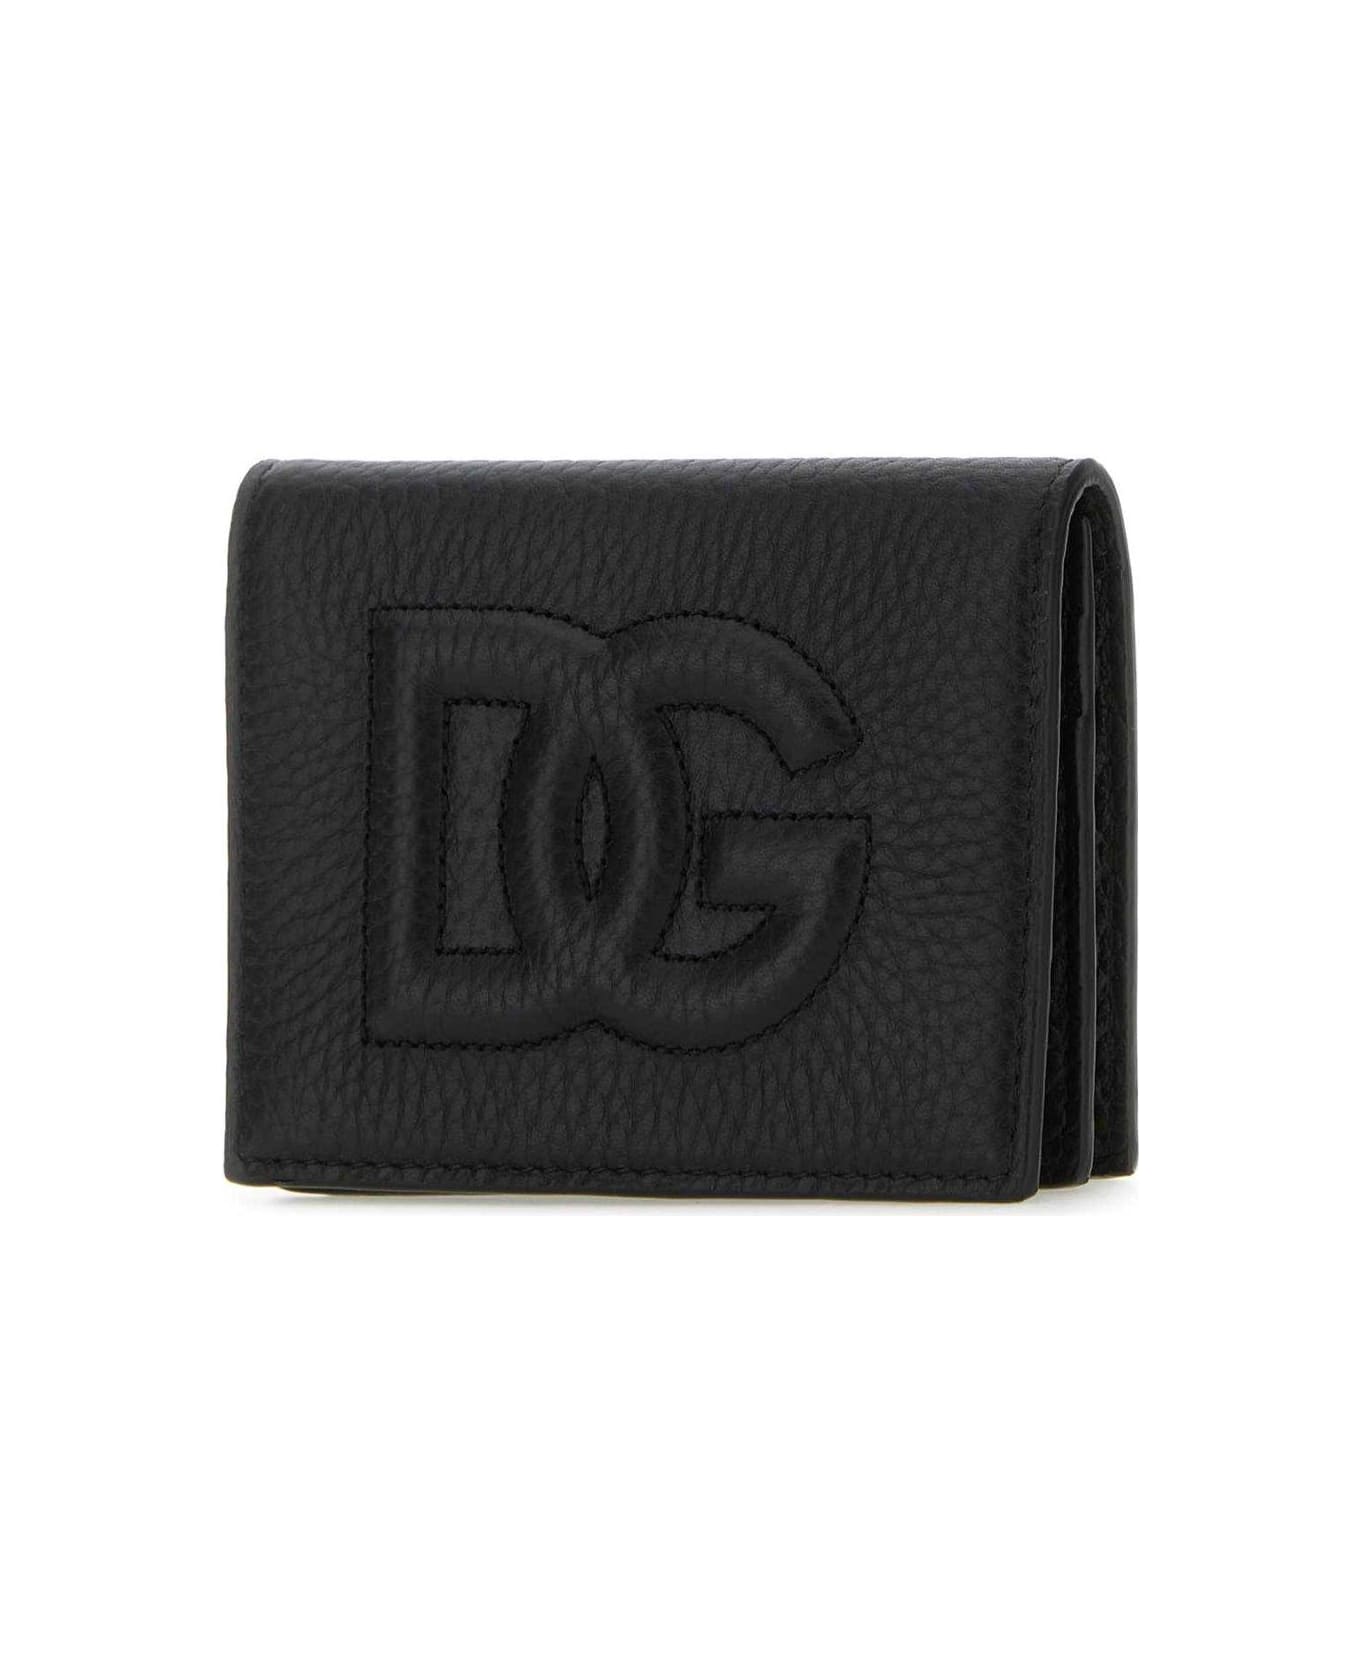 Dolce & Gabbana Wallet - NERO 財布